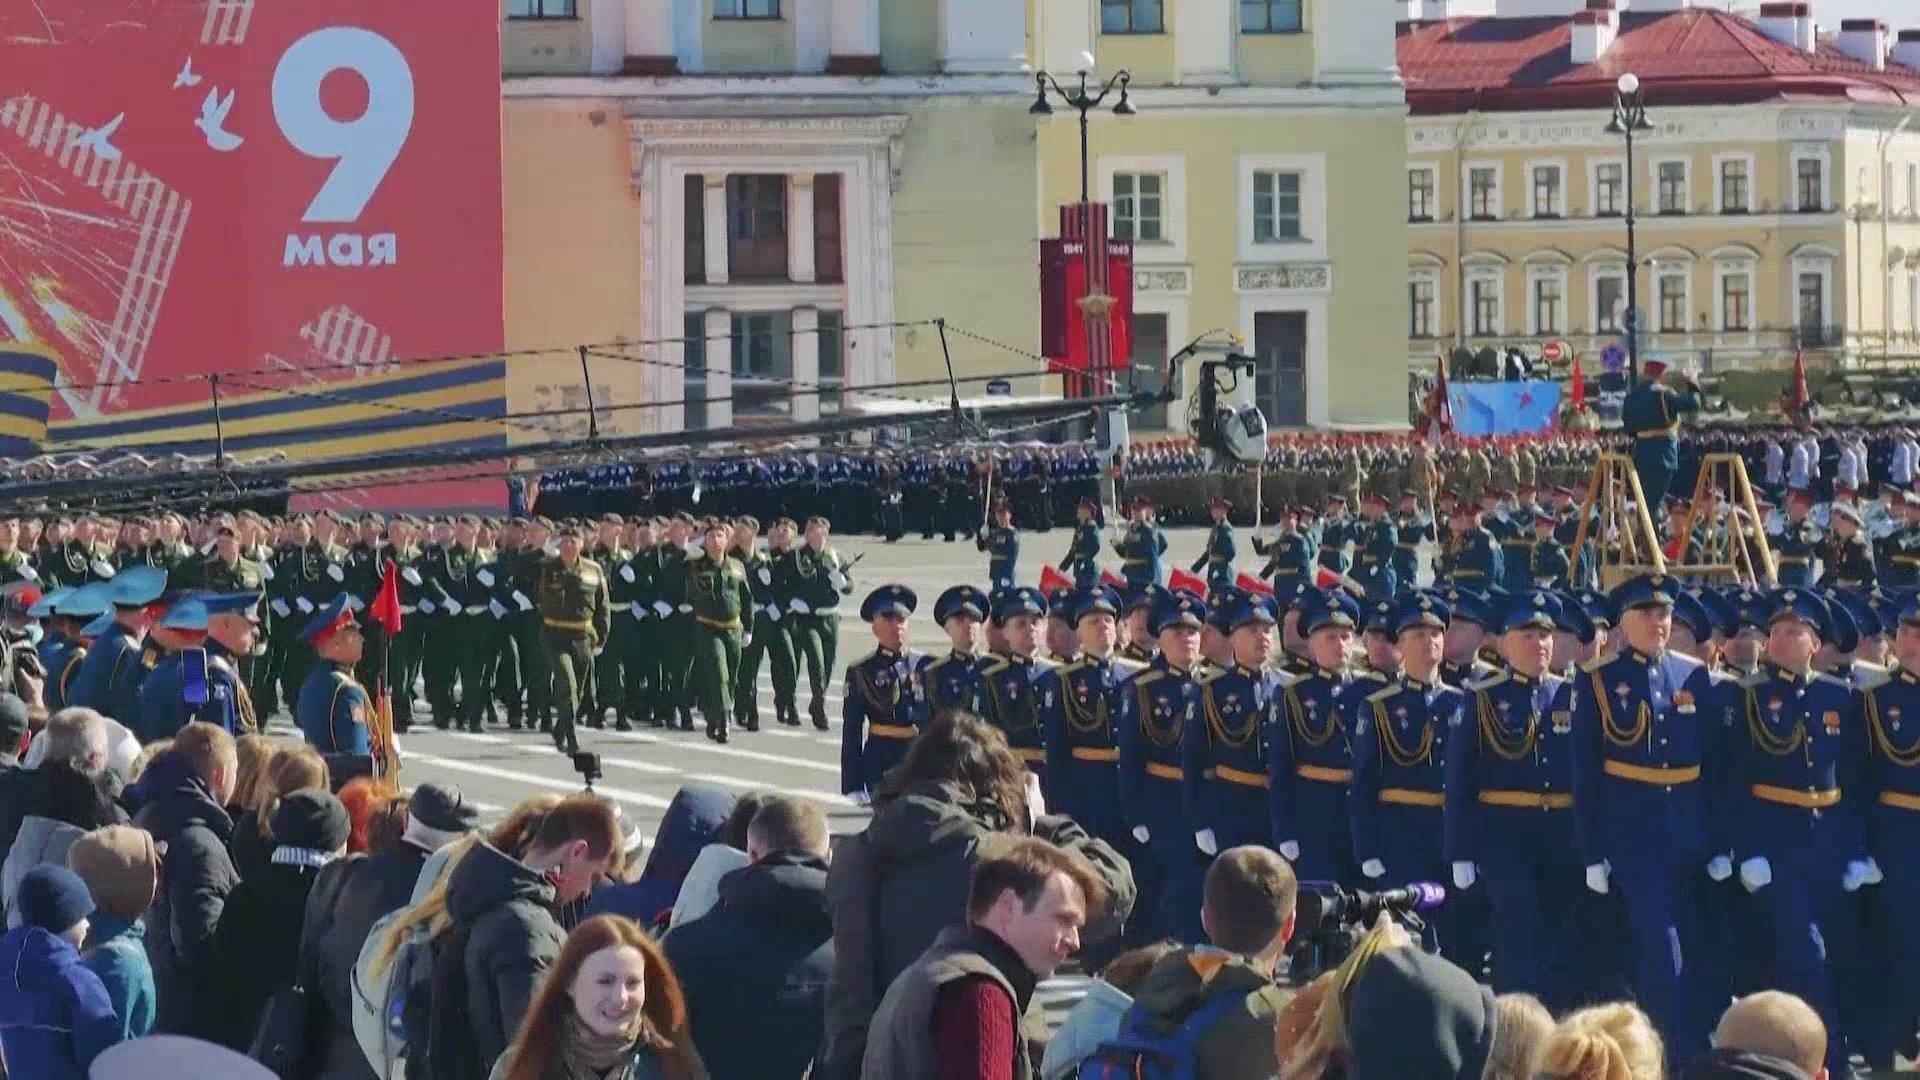 俄罗斯举行纪念卫国战争胜利77周年红场阅兵总彩排